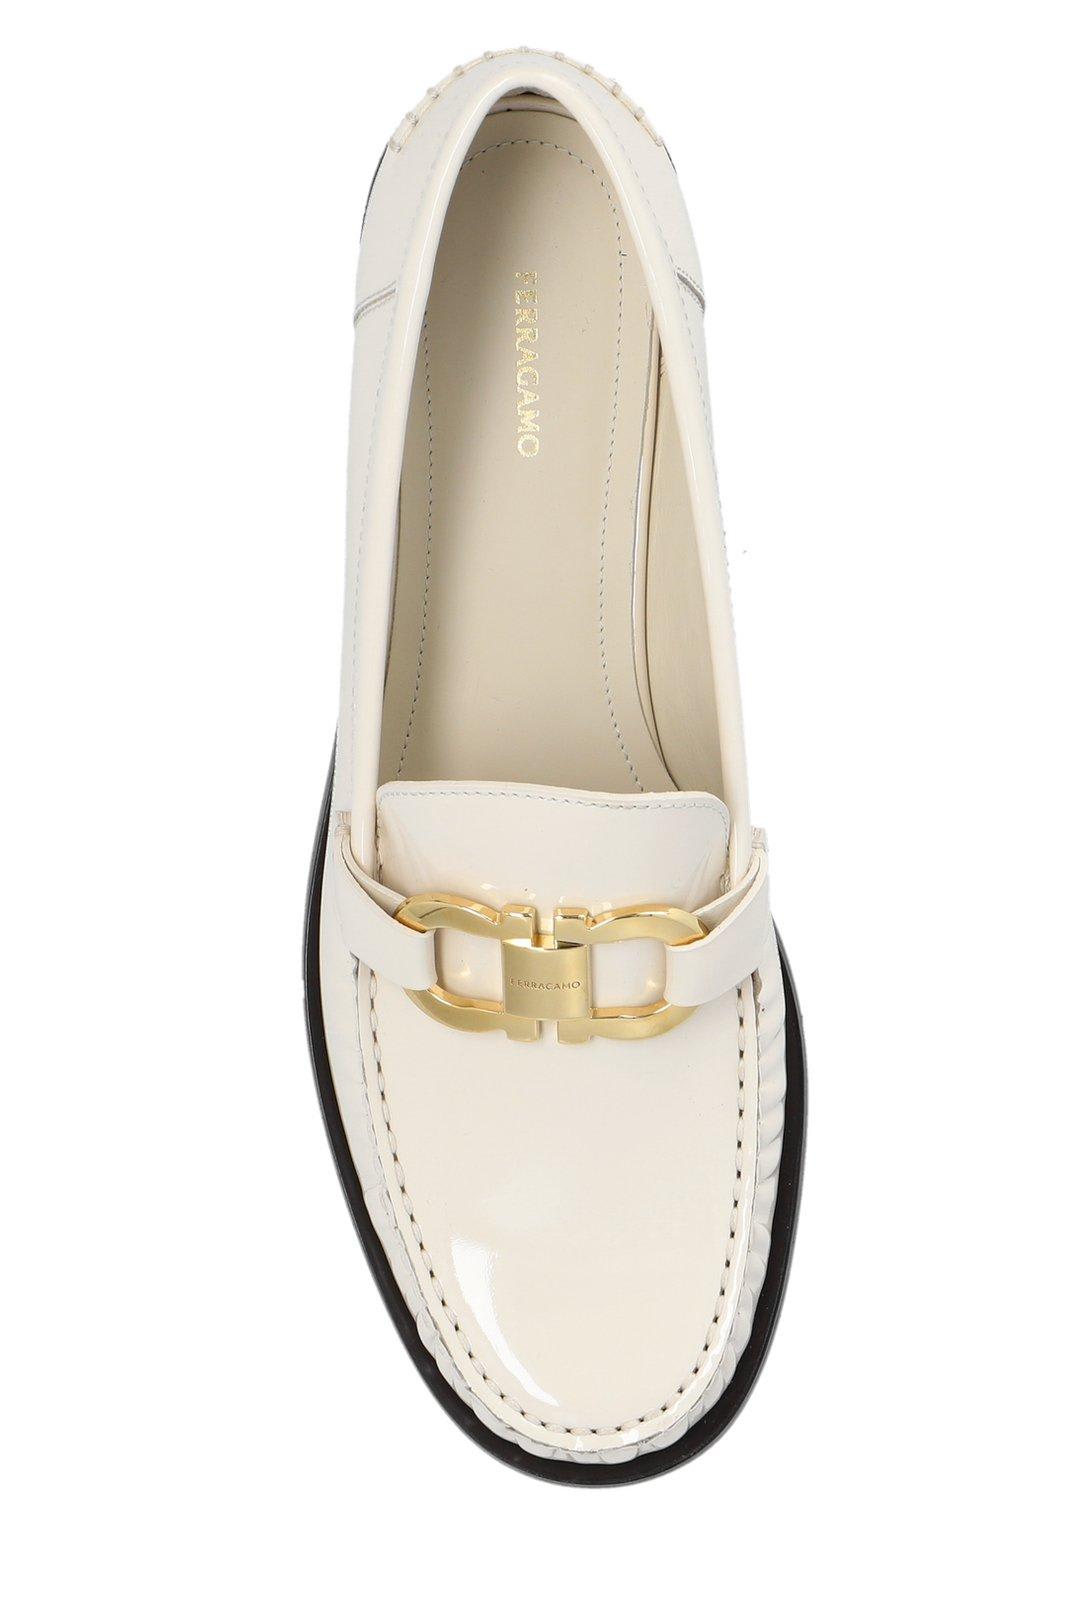 Shop Ferragamo Slip-on Loafers In Bianco